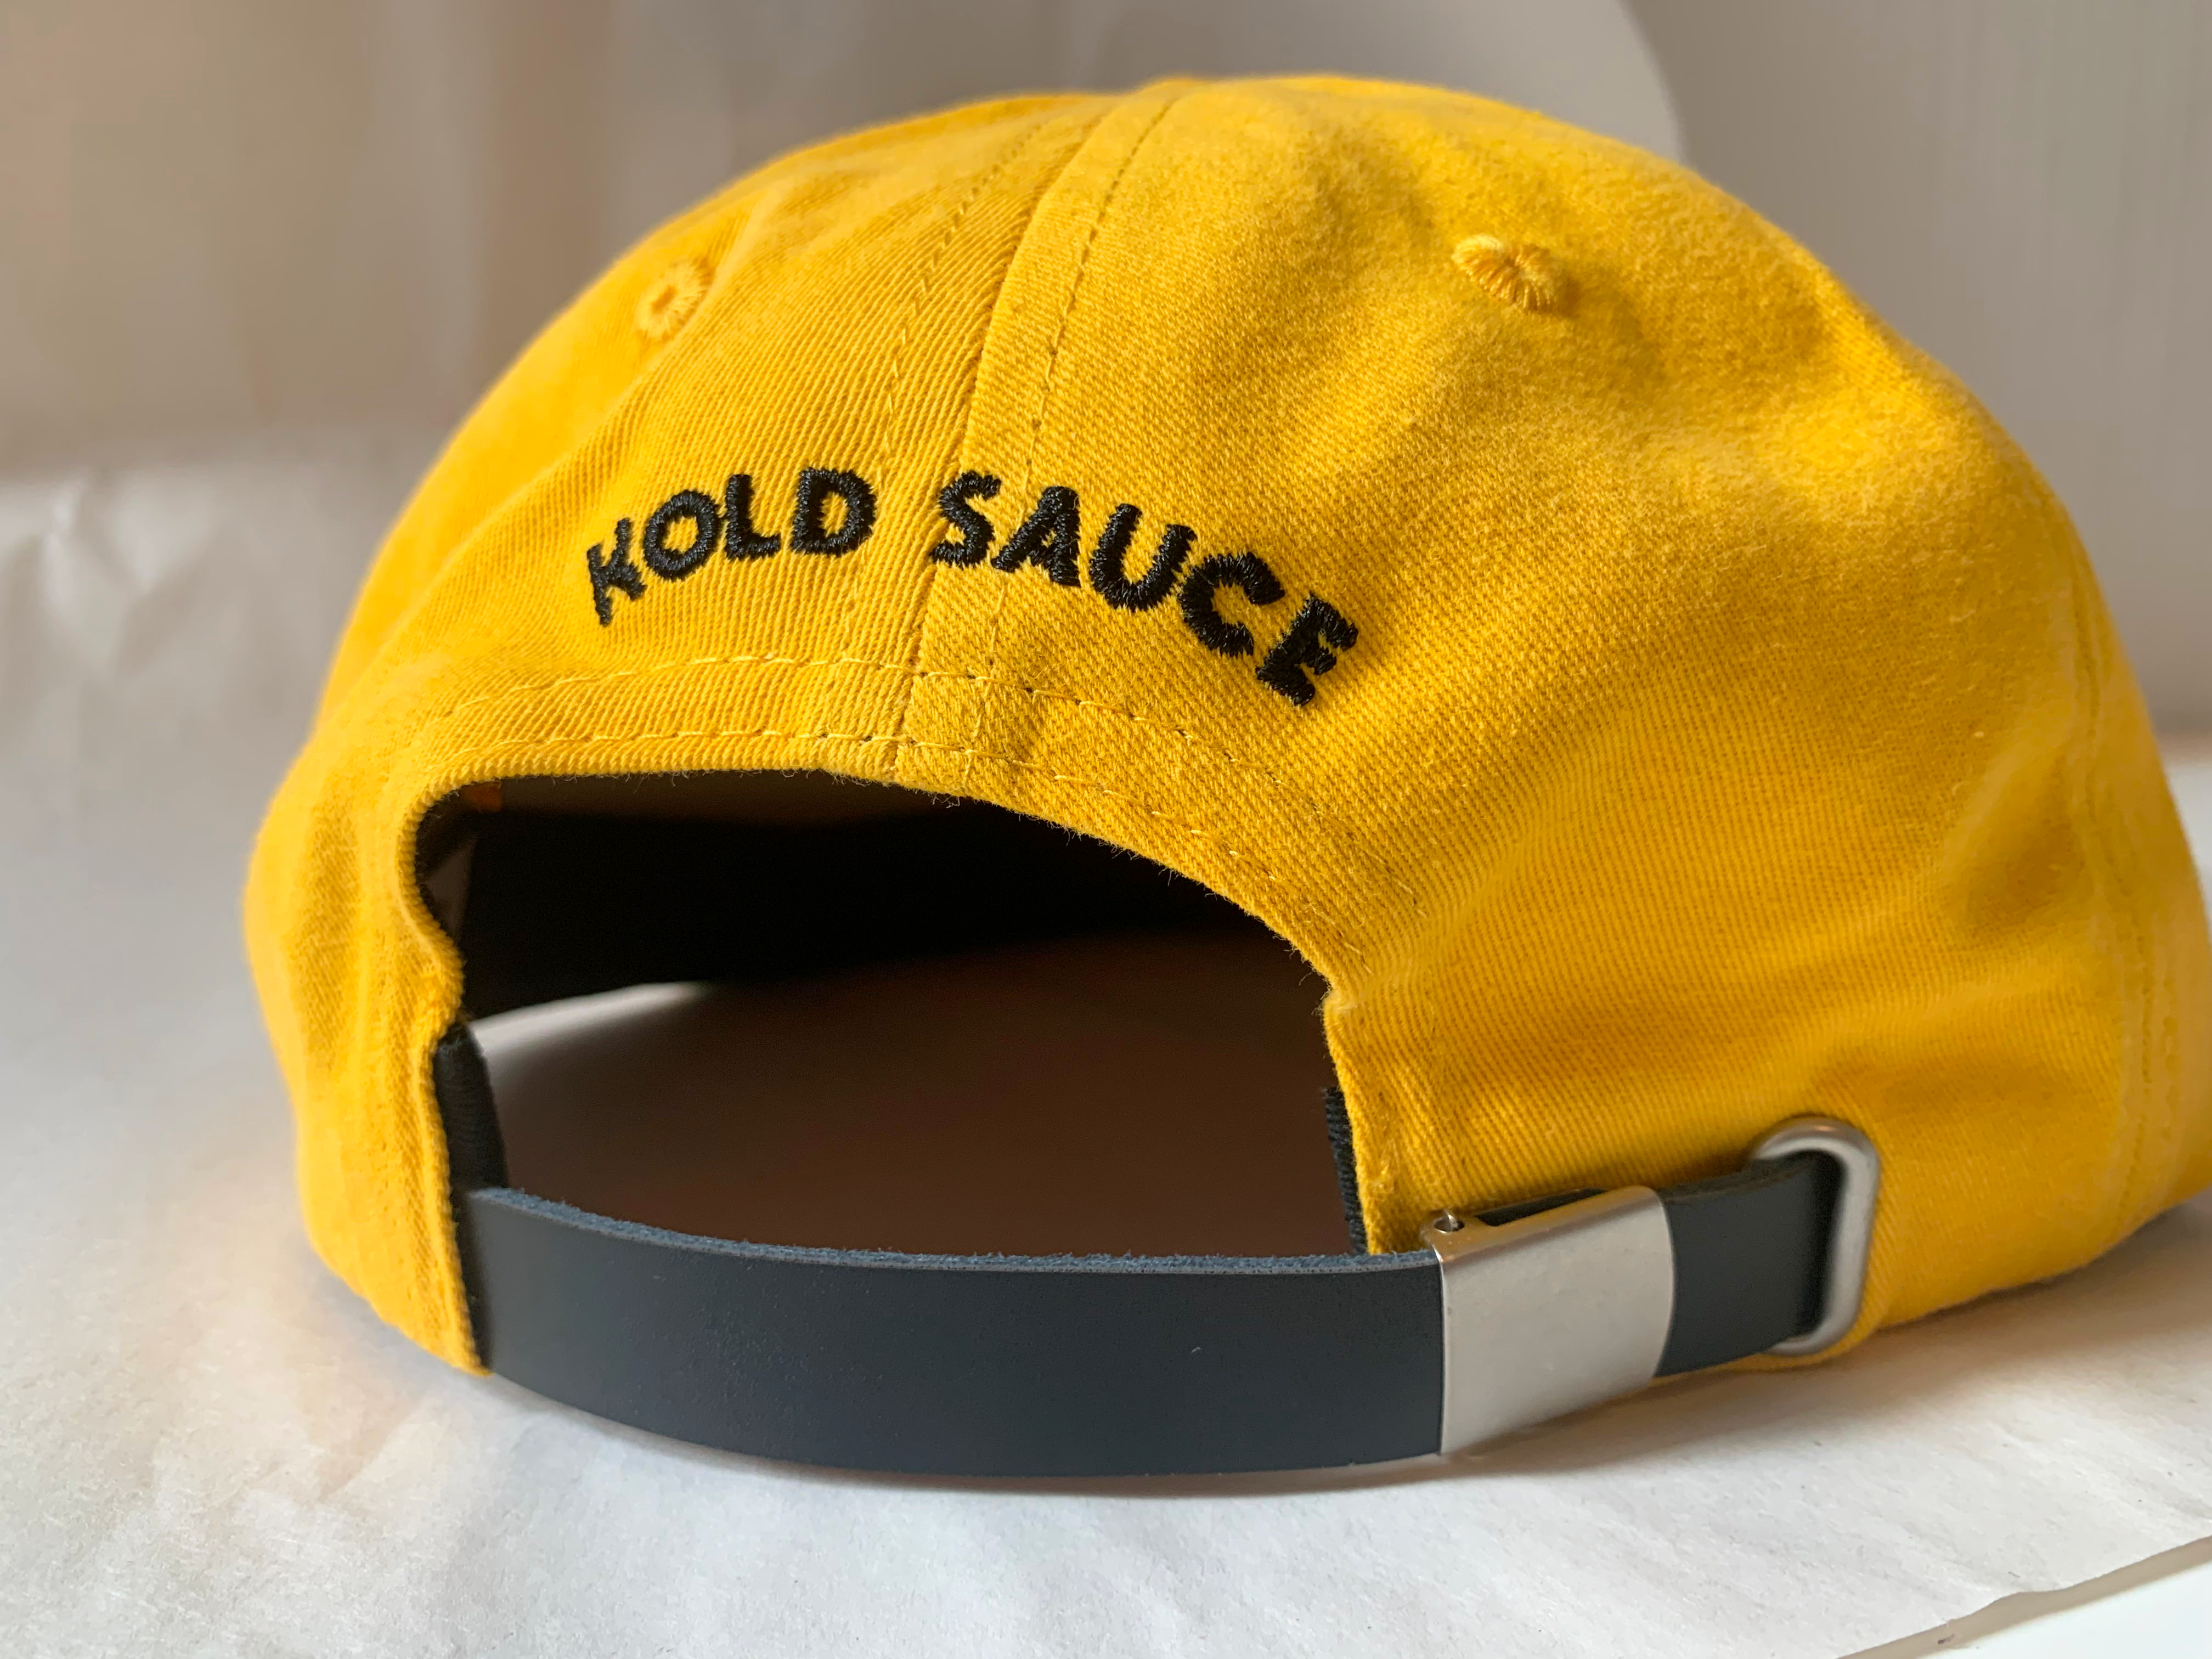 Kold Gold Cap